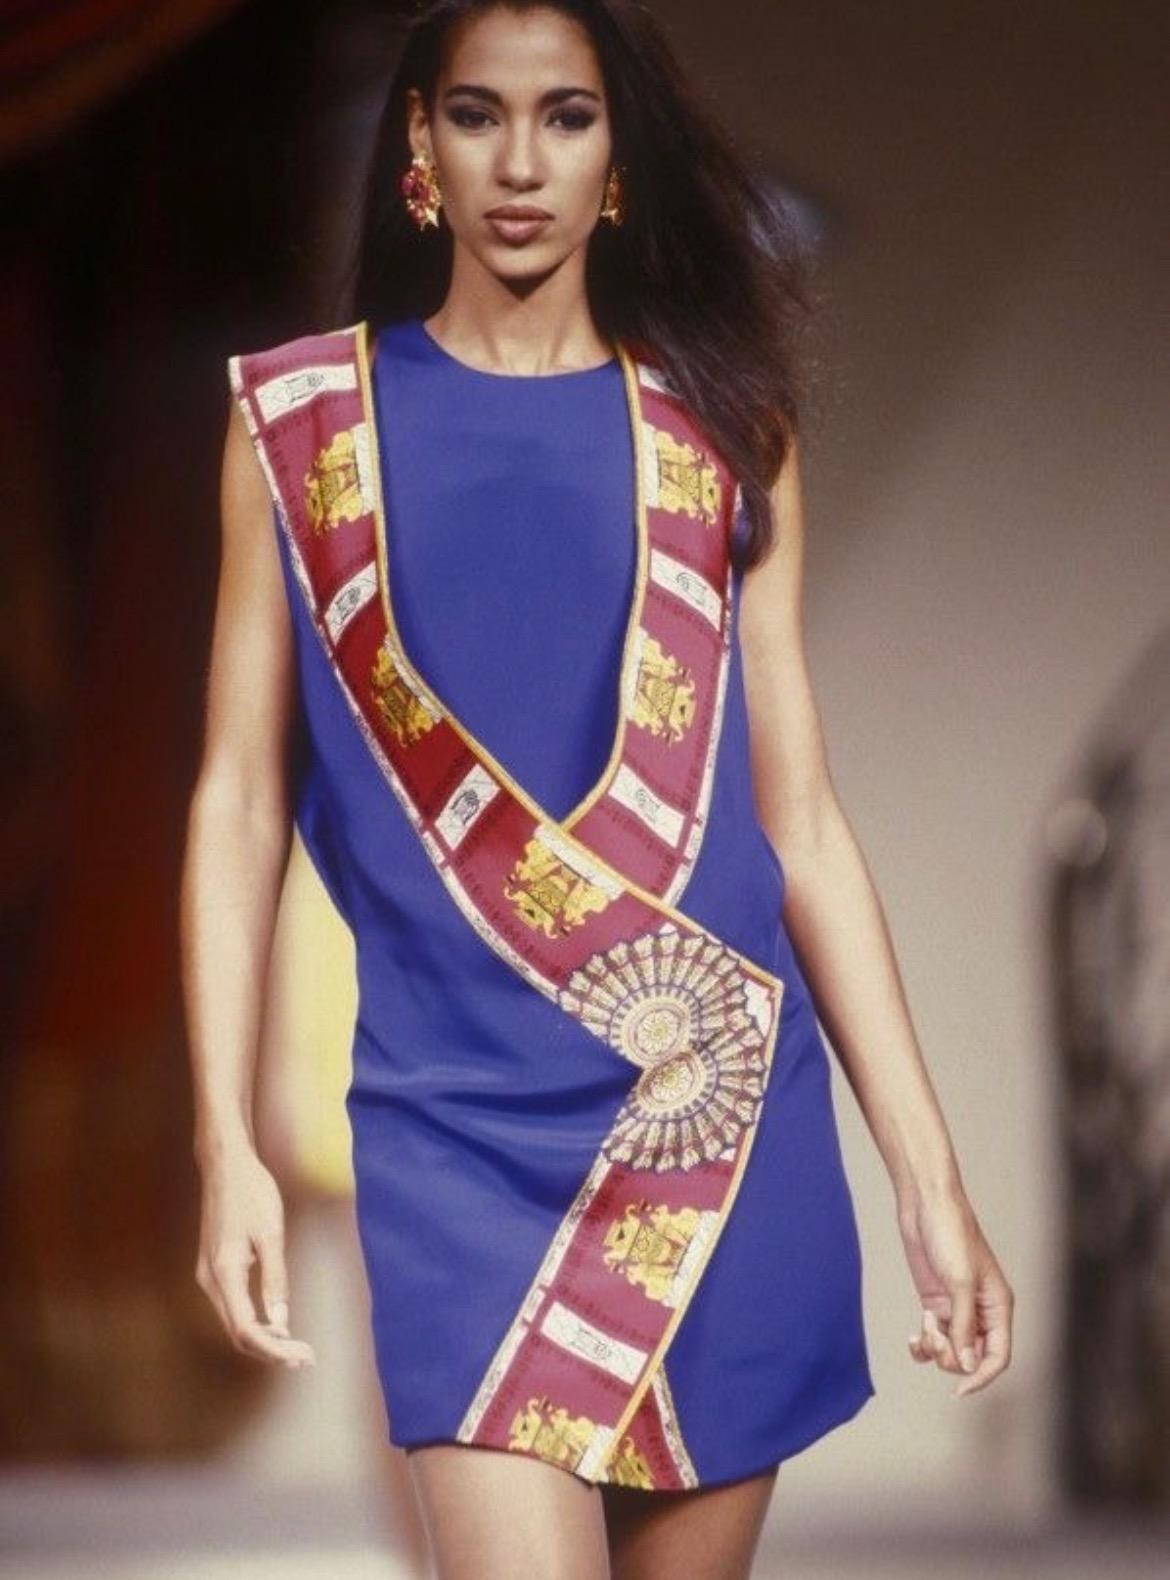 Nous vous présentons un superbe ensemble de robes Atelier Versace de la collection S/S 1991, dessinée par Gianni Versace. Cette pièce extraordinaire est visible sur les défilés de haute couture de la saison. Composée de deux pièces, le corps de la